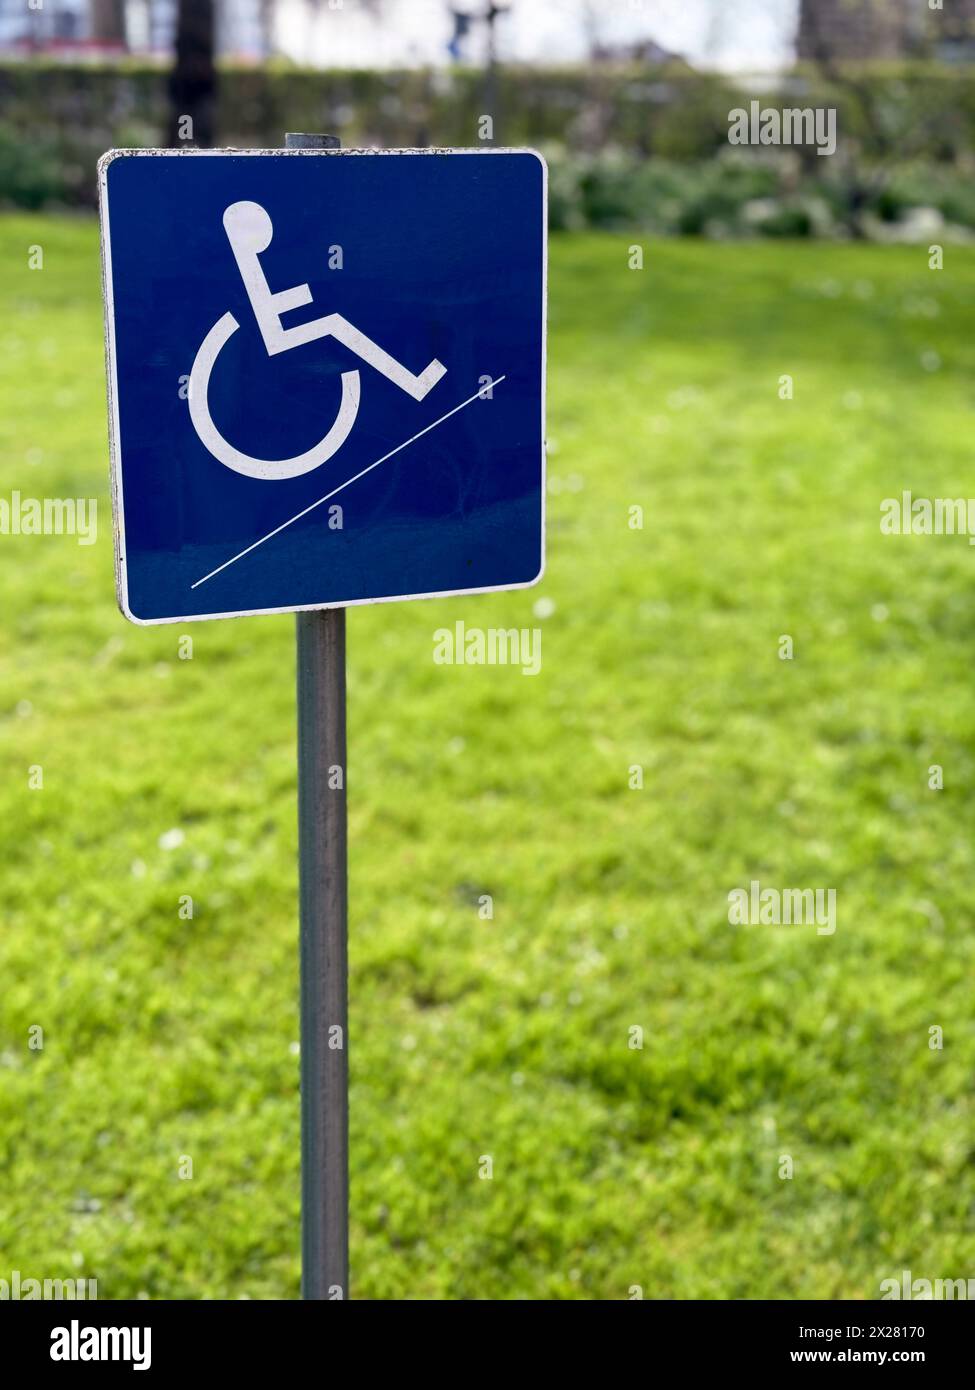 Un petit panneau bleu pour handicapés en fauteuil roulant se dresse contre un fond de jardin flou, symbolisant l'accessibilité et l'inclusivité dans les espaces extérieurs. Banque D'Images